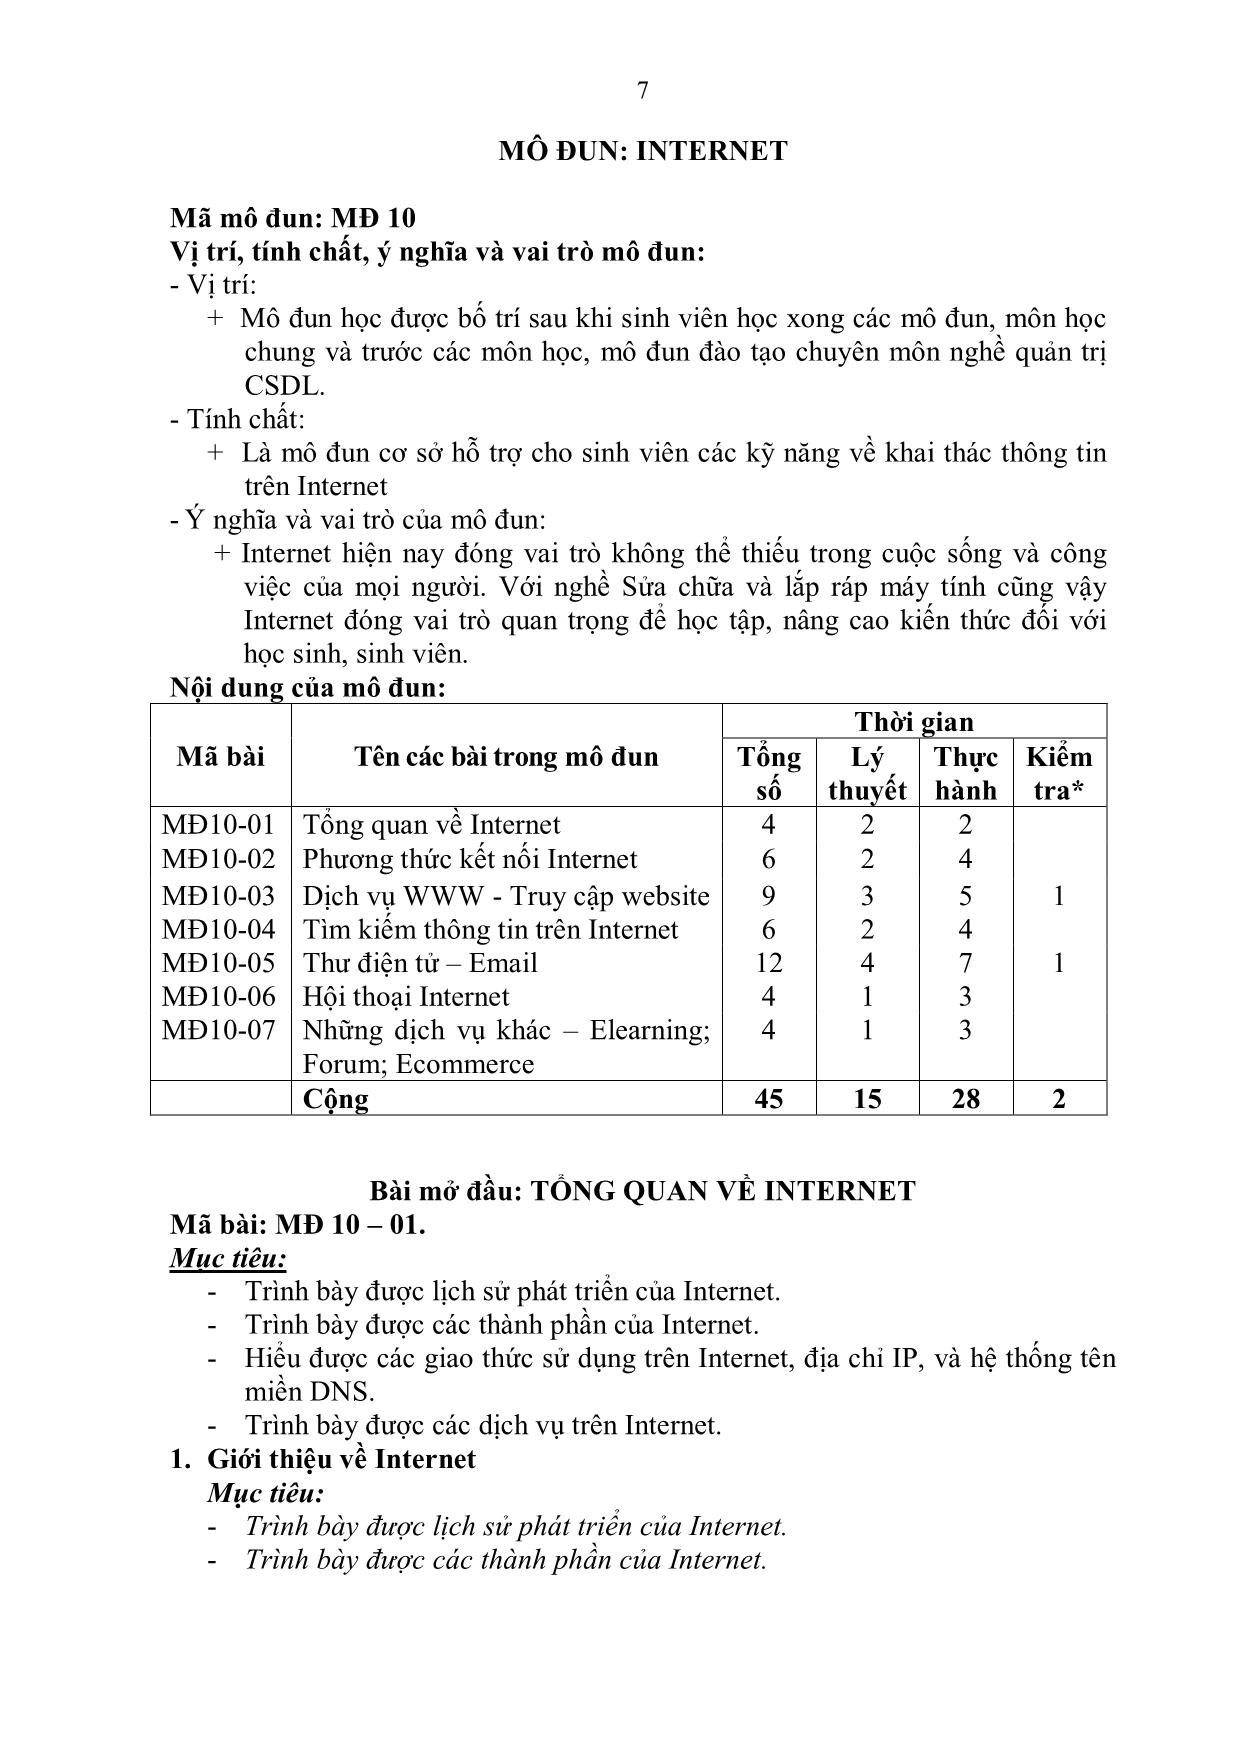 Giáo trình Internet - Bài 1: Phương thức kết nối Internet trang 7